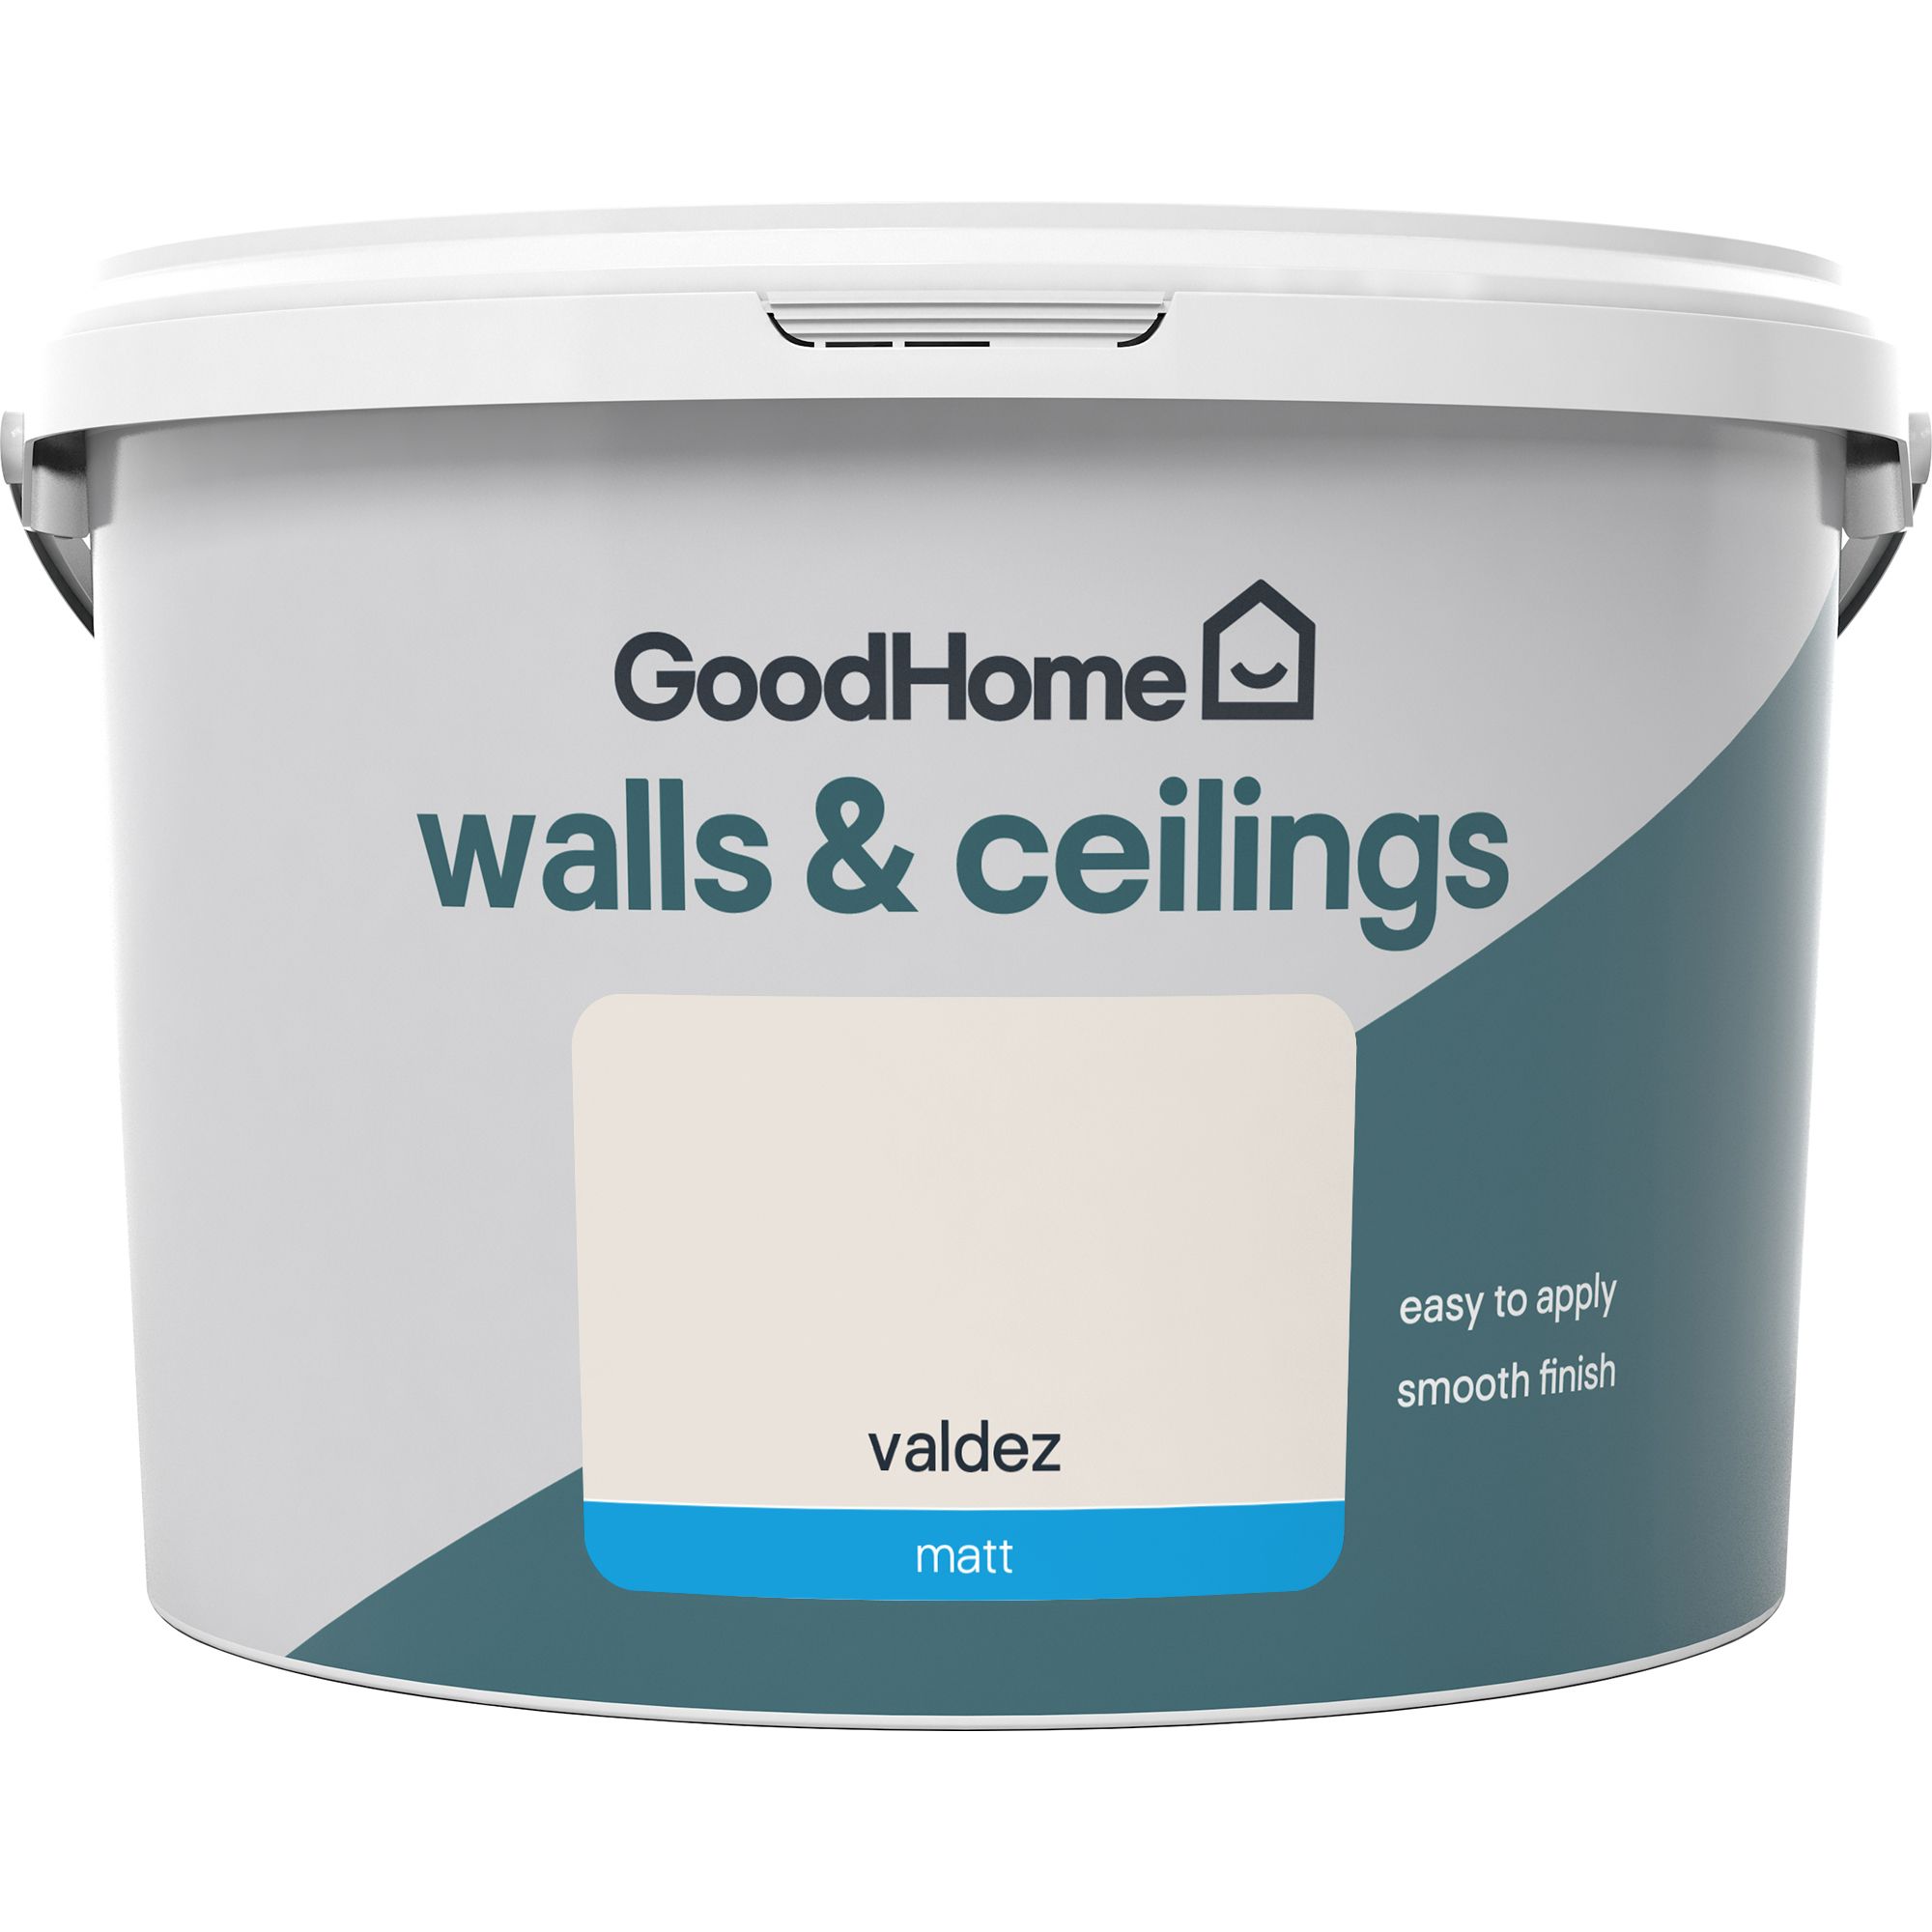 GoodHome Walls & ceilings Valdez Matt Emulsion paint, 2.5L